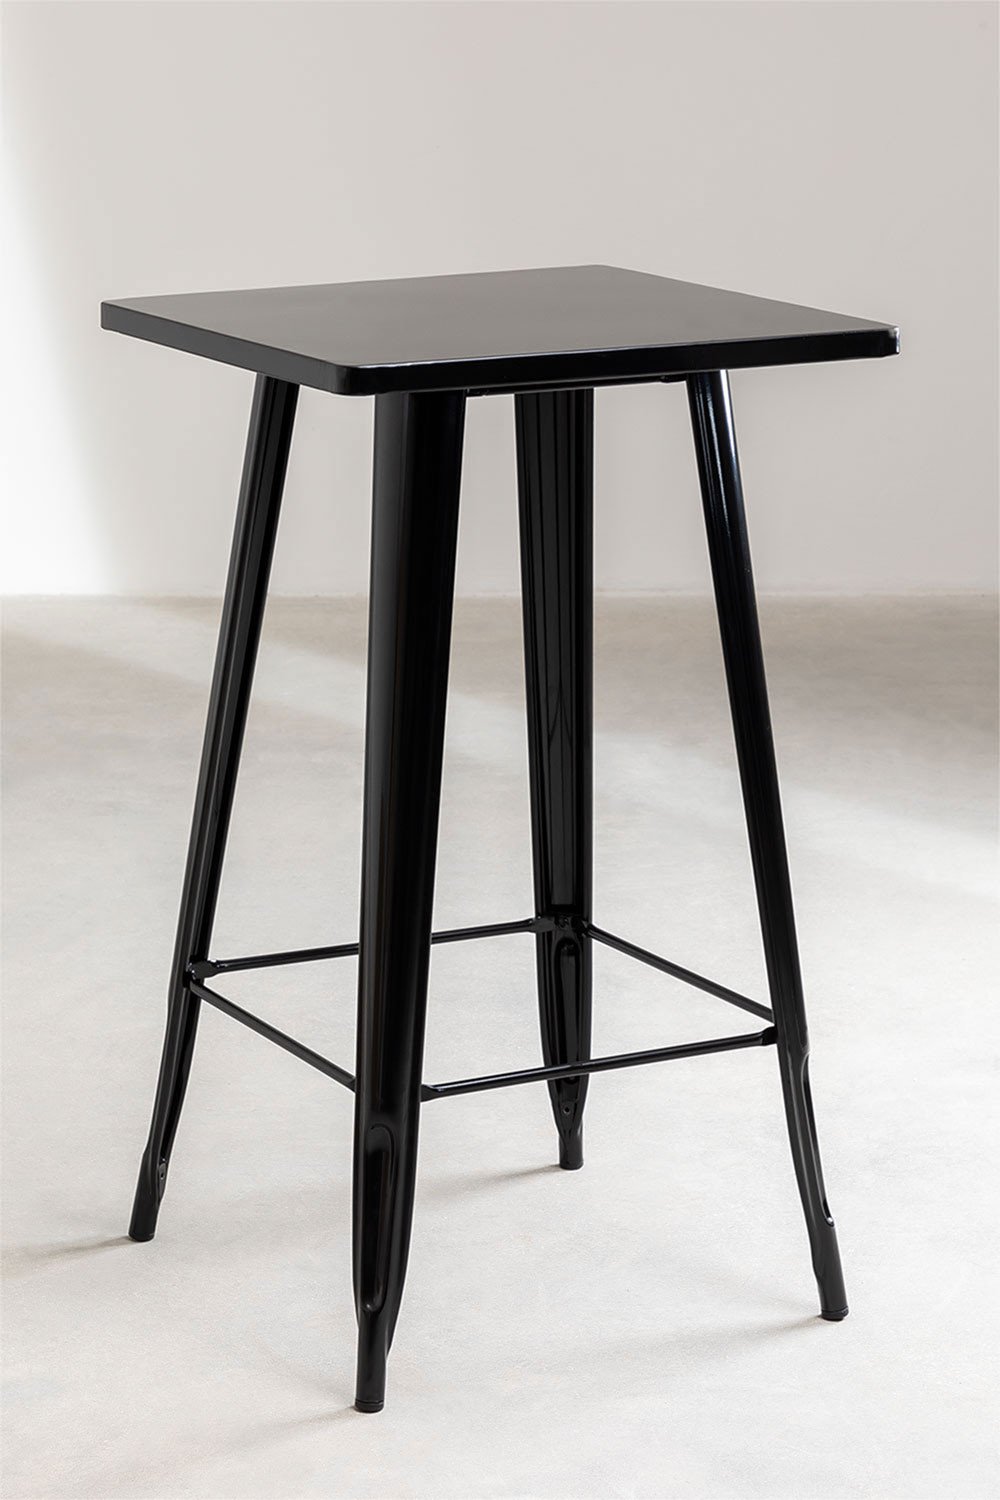 Conjunto industrial 4 taburetes tolix mesa bar 60 x 60 cm madera